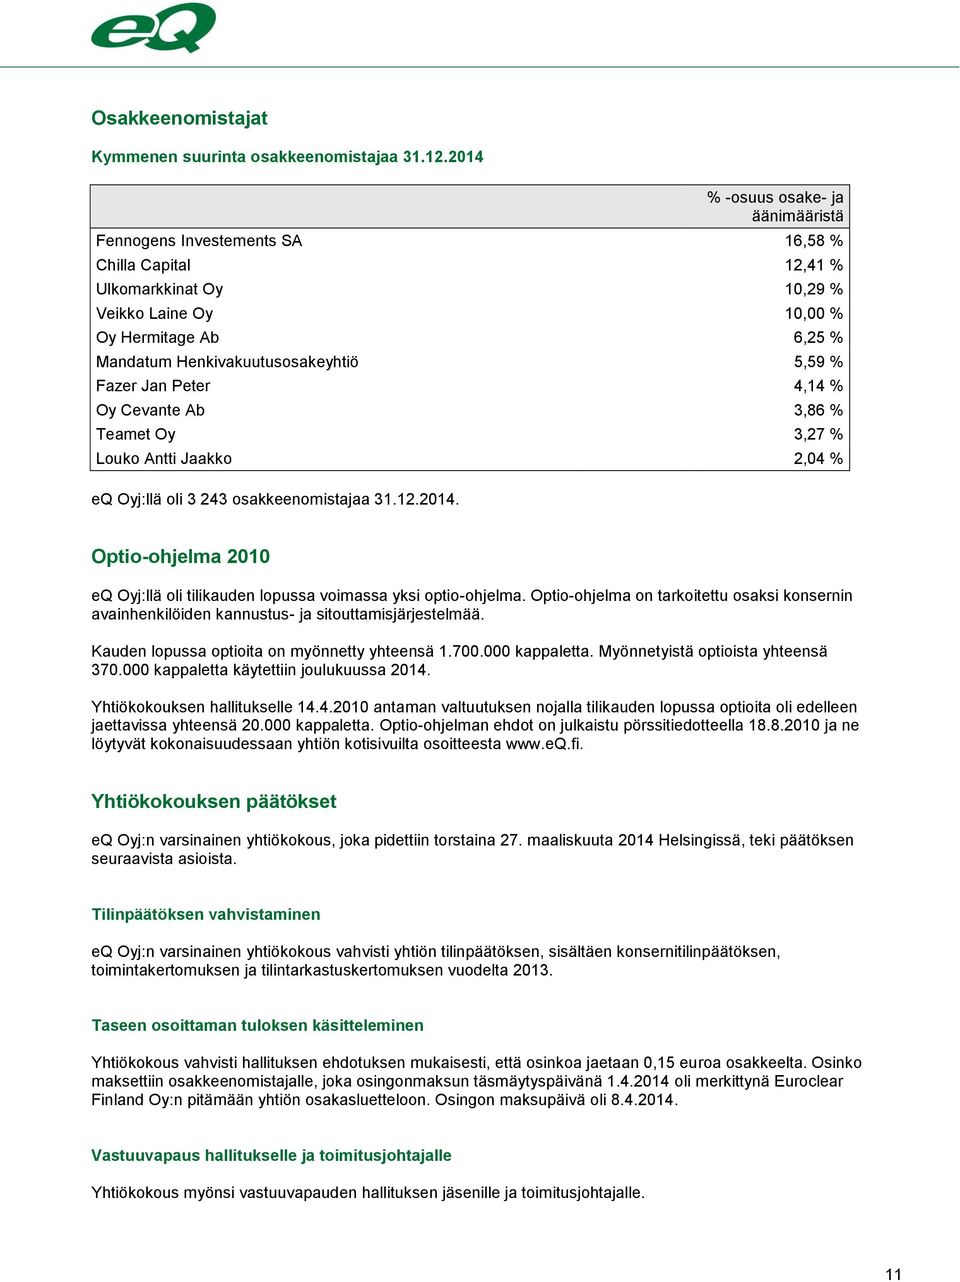 % Fazer Jan Peter 4,14 % Oy Cevante Ab 3,86 % Teamet Oy 3,27 % Louko Antti Jaakko 2,04 % eq Oyj:llä oli 3 243 osakkeenomistajaa 31.12.